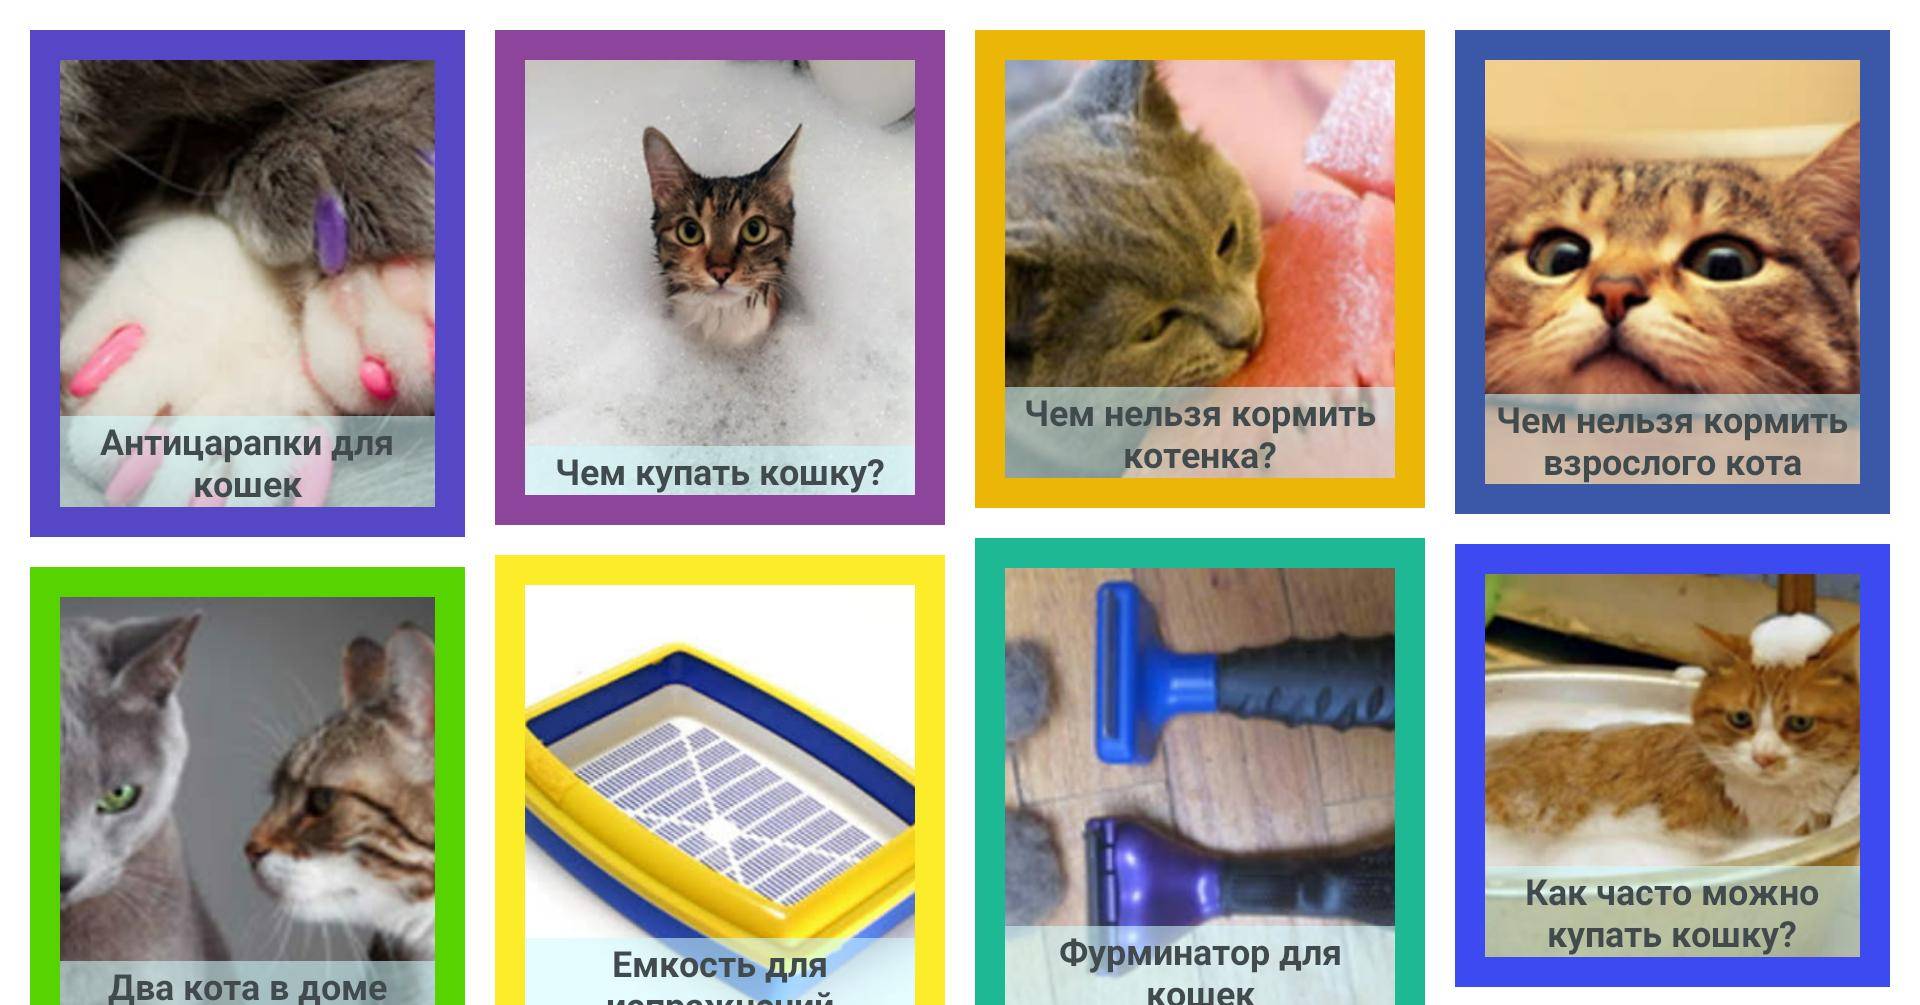 Как мыть кошку в домашних условиях - подробная инструкция и мой личный опыт